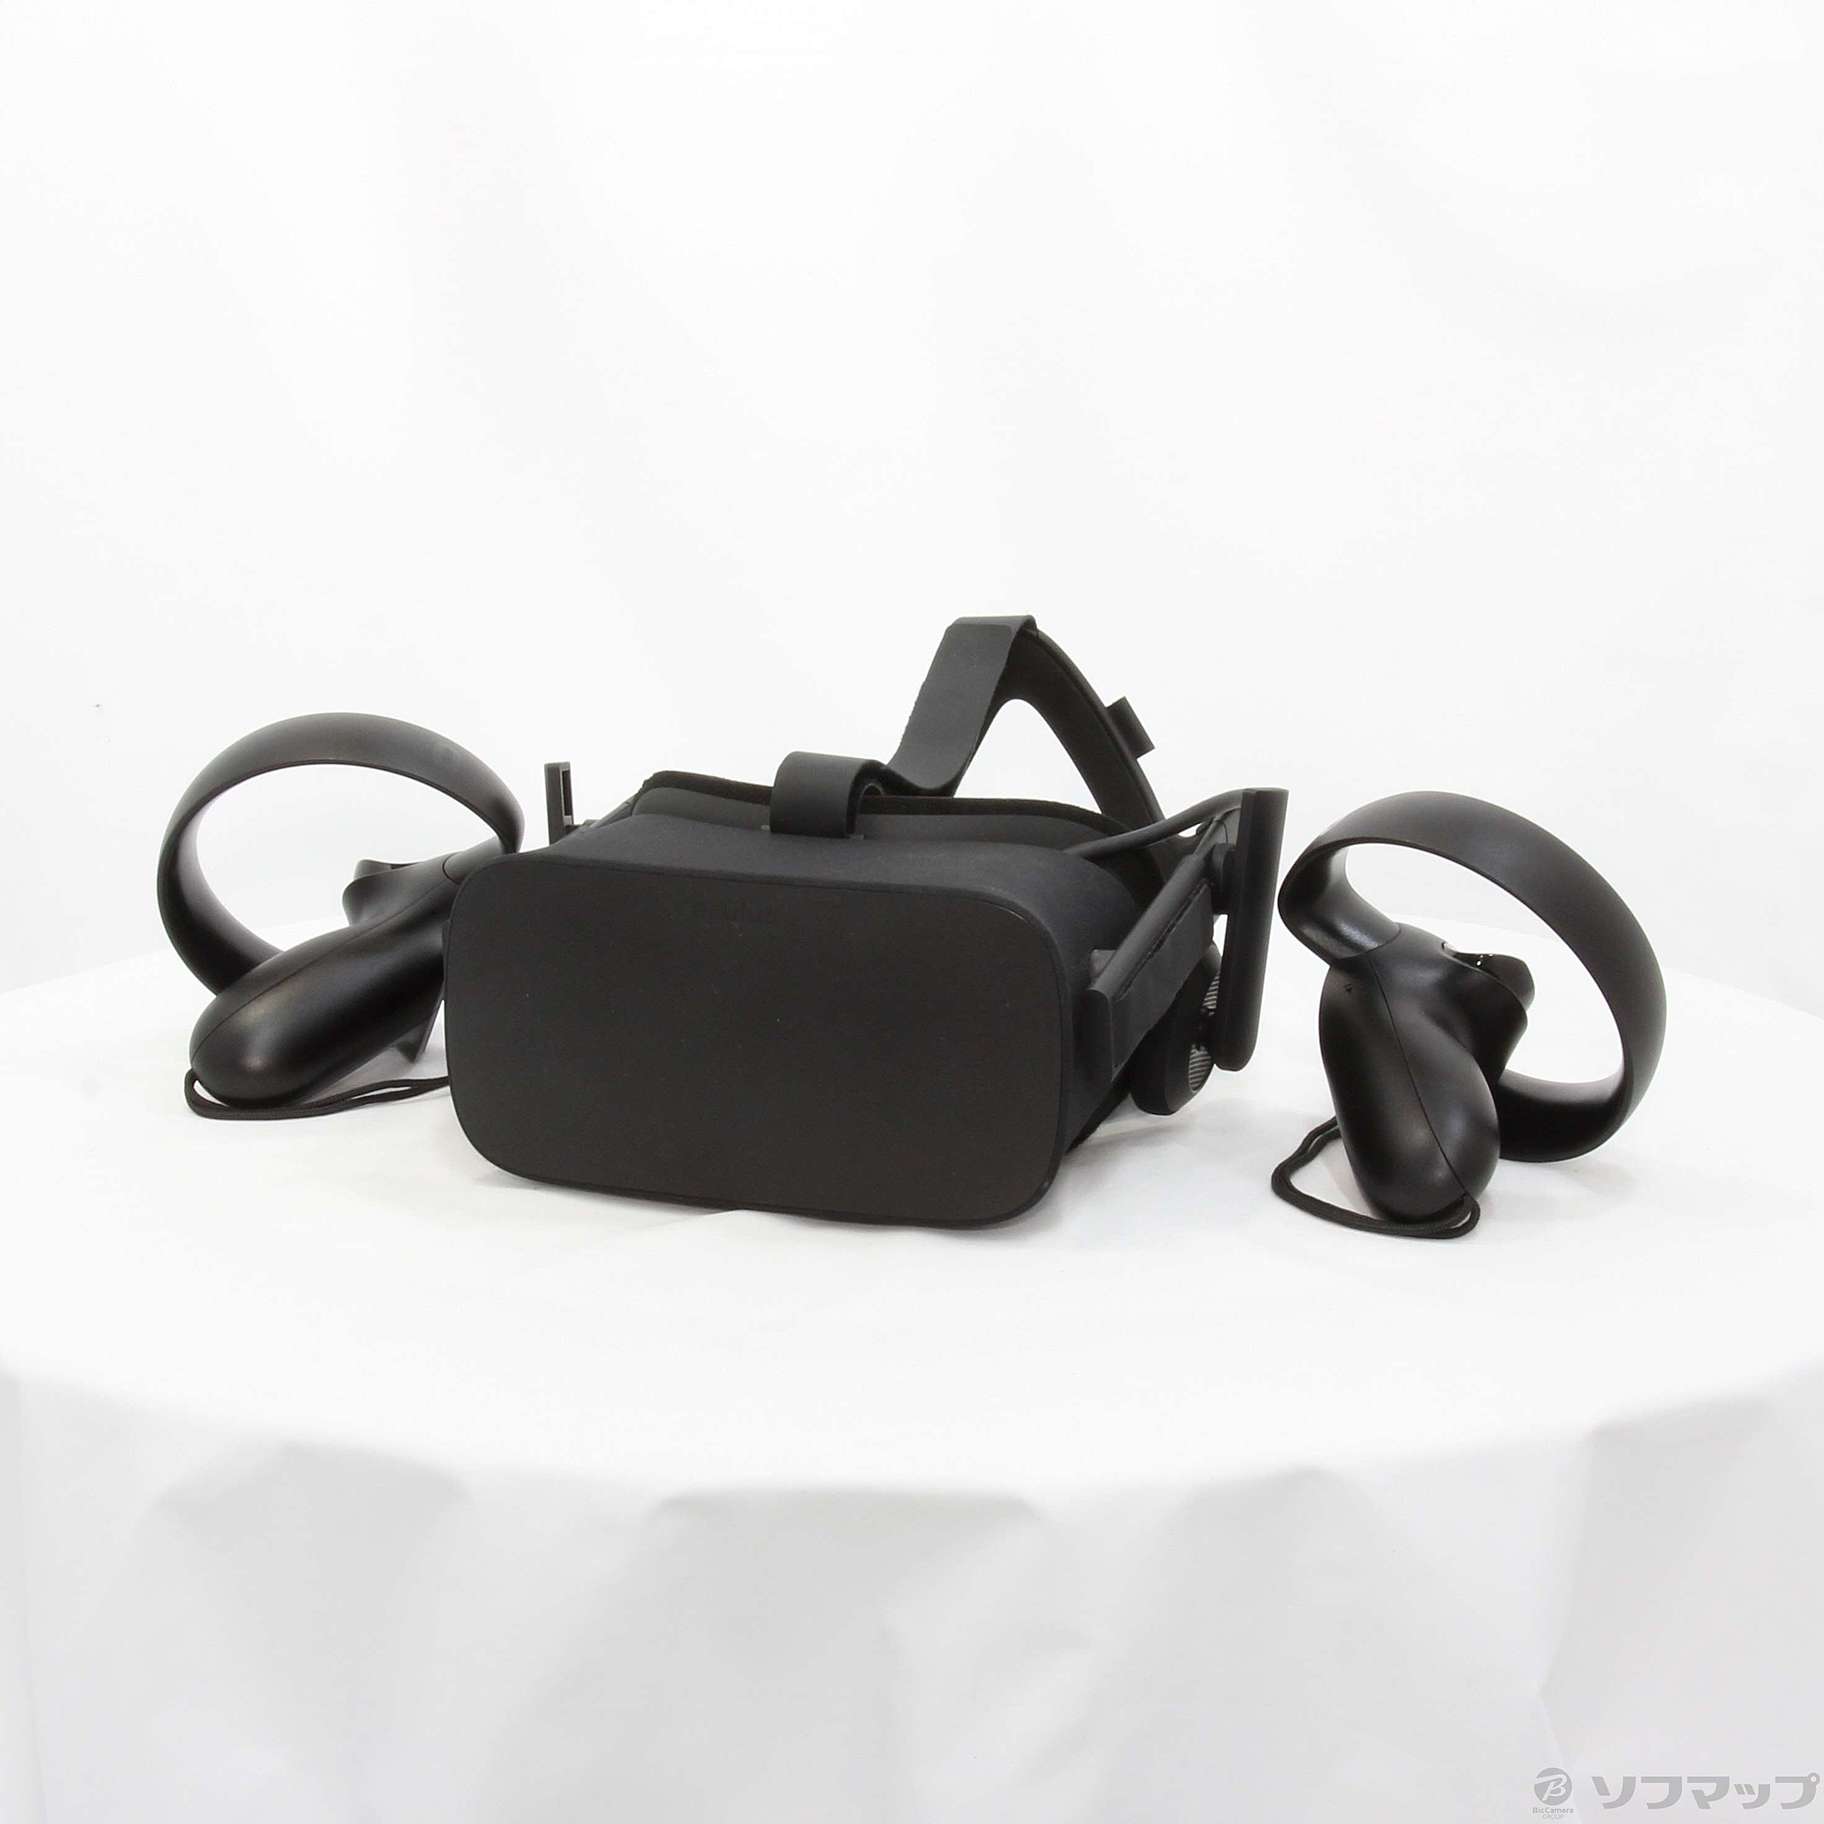 中古】Oculus Rift CV1 (Oculus Touch 同梱版) [2133033653894